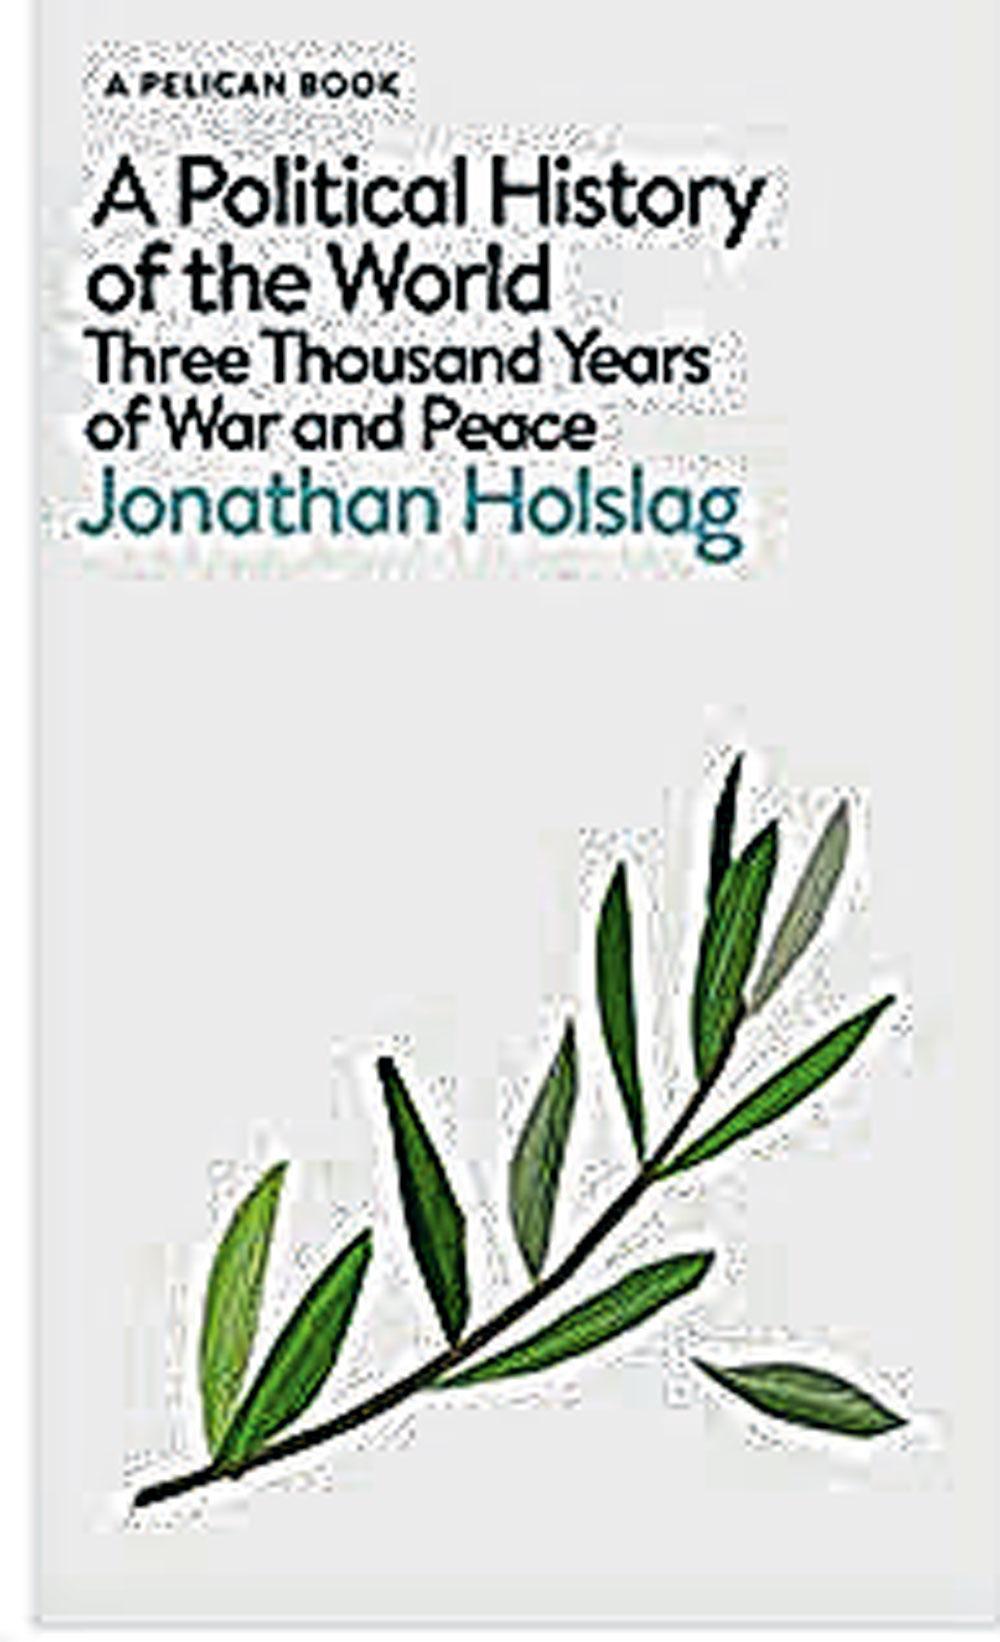 Jonathan Holslag, A Political History of the World, Penguin Books, 656 blz., 11,99 euro. (Vertaald als Vrede en oorlog)